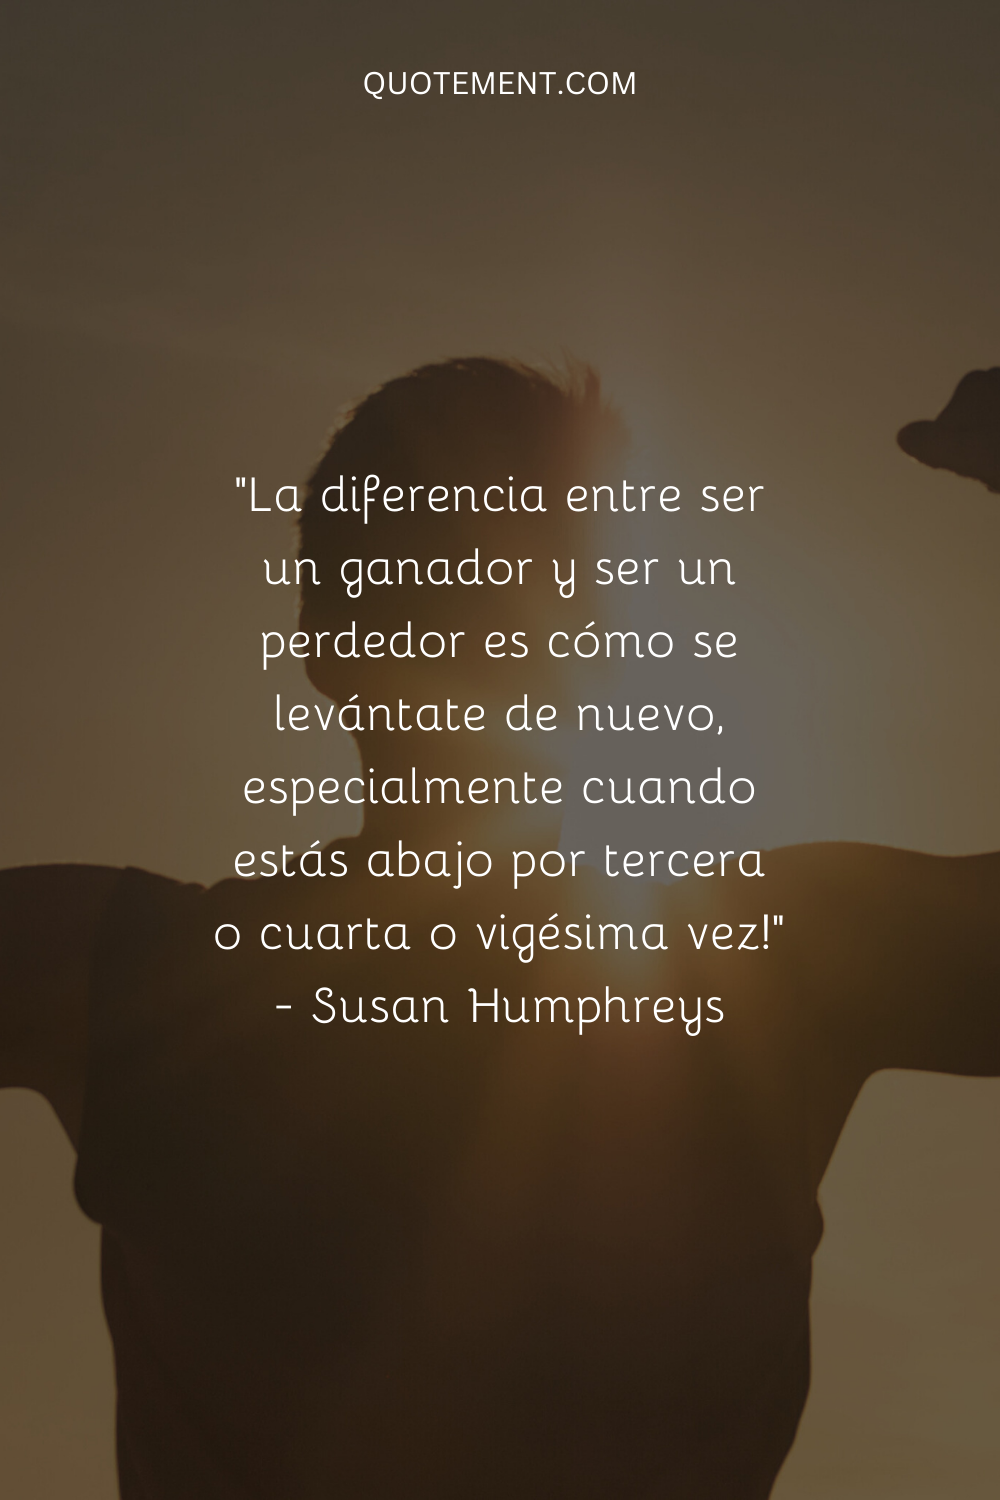 "La diferencia entre ser un ganador y ser un perdedor es cómo te levantas de nuevo, sobre todo cuando caes por tercera, cuarta o vigésima vez". - Susan Humphreys